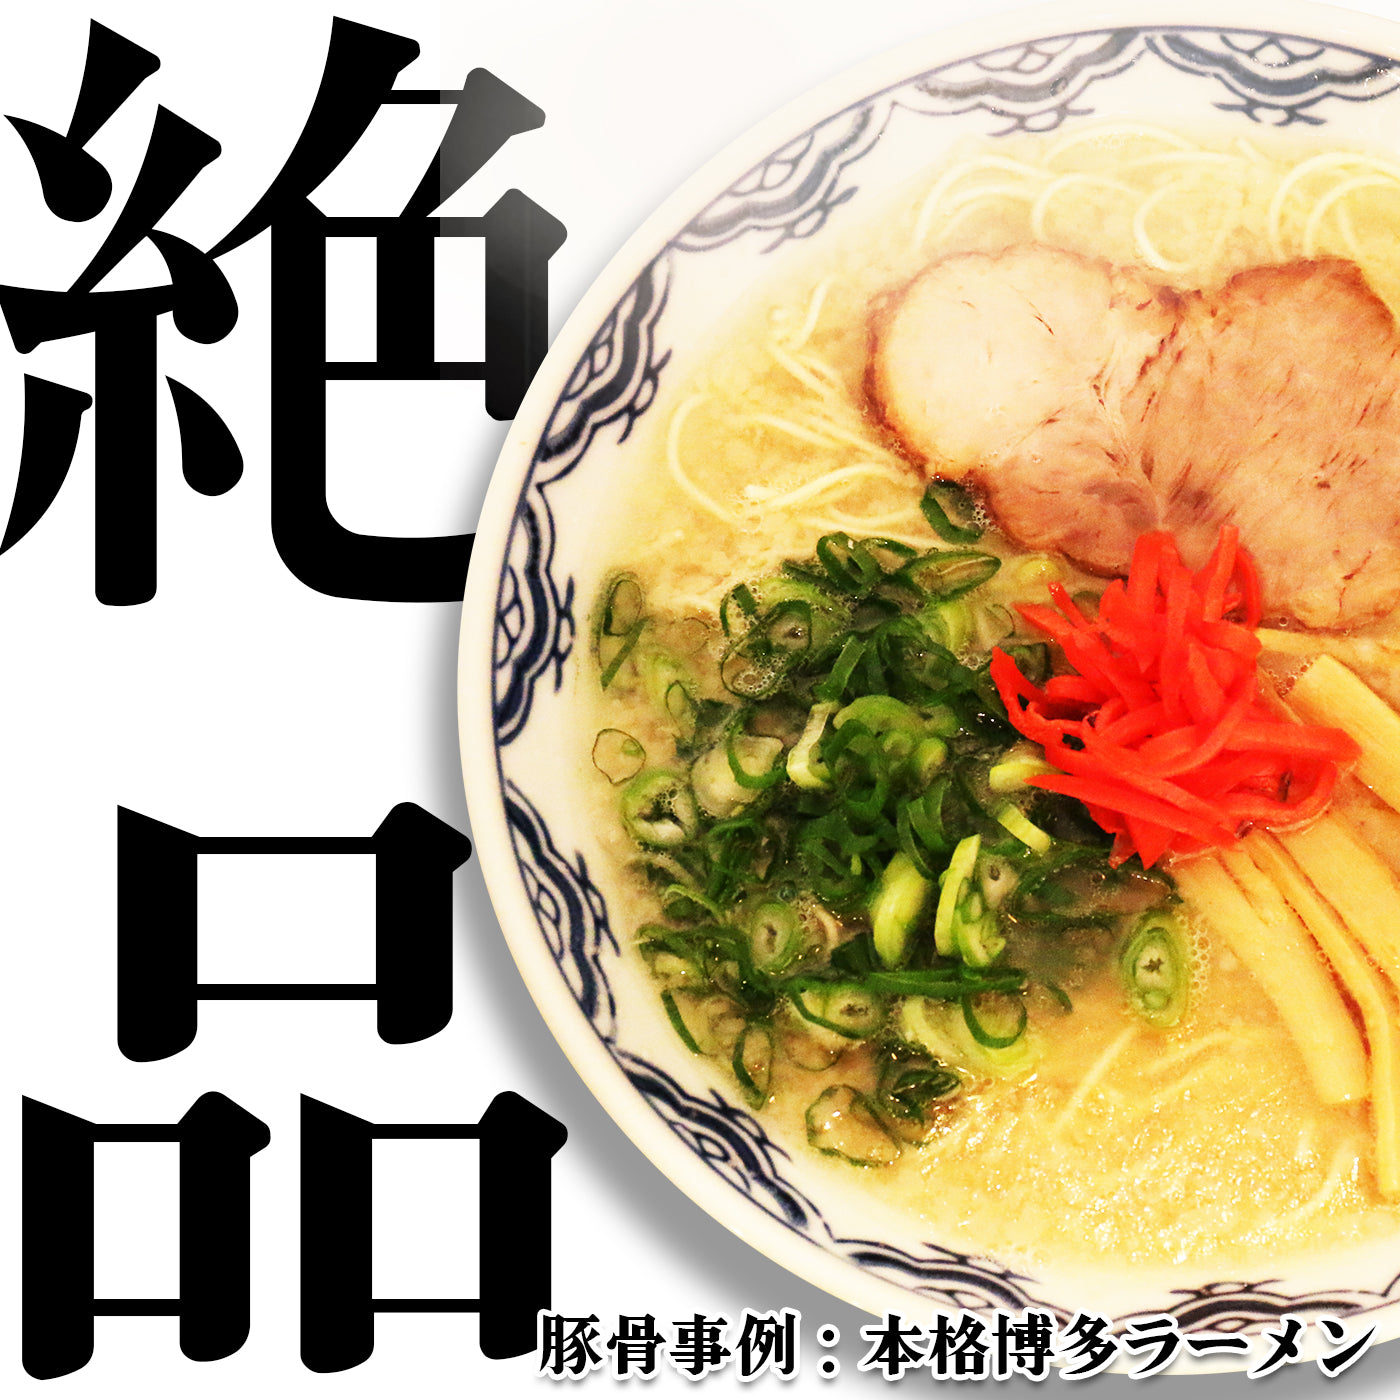 【無料サンプル】豚骨白湯スープのスタートセット